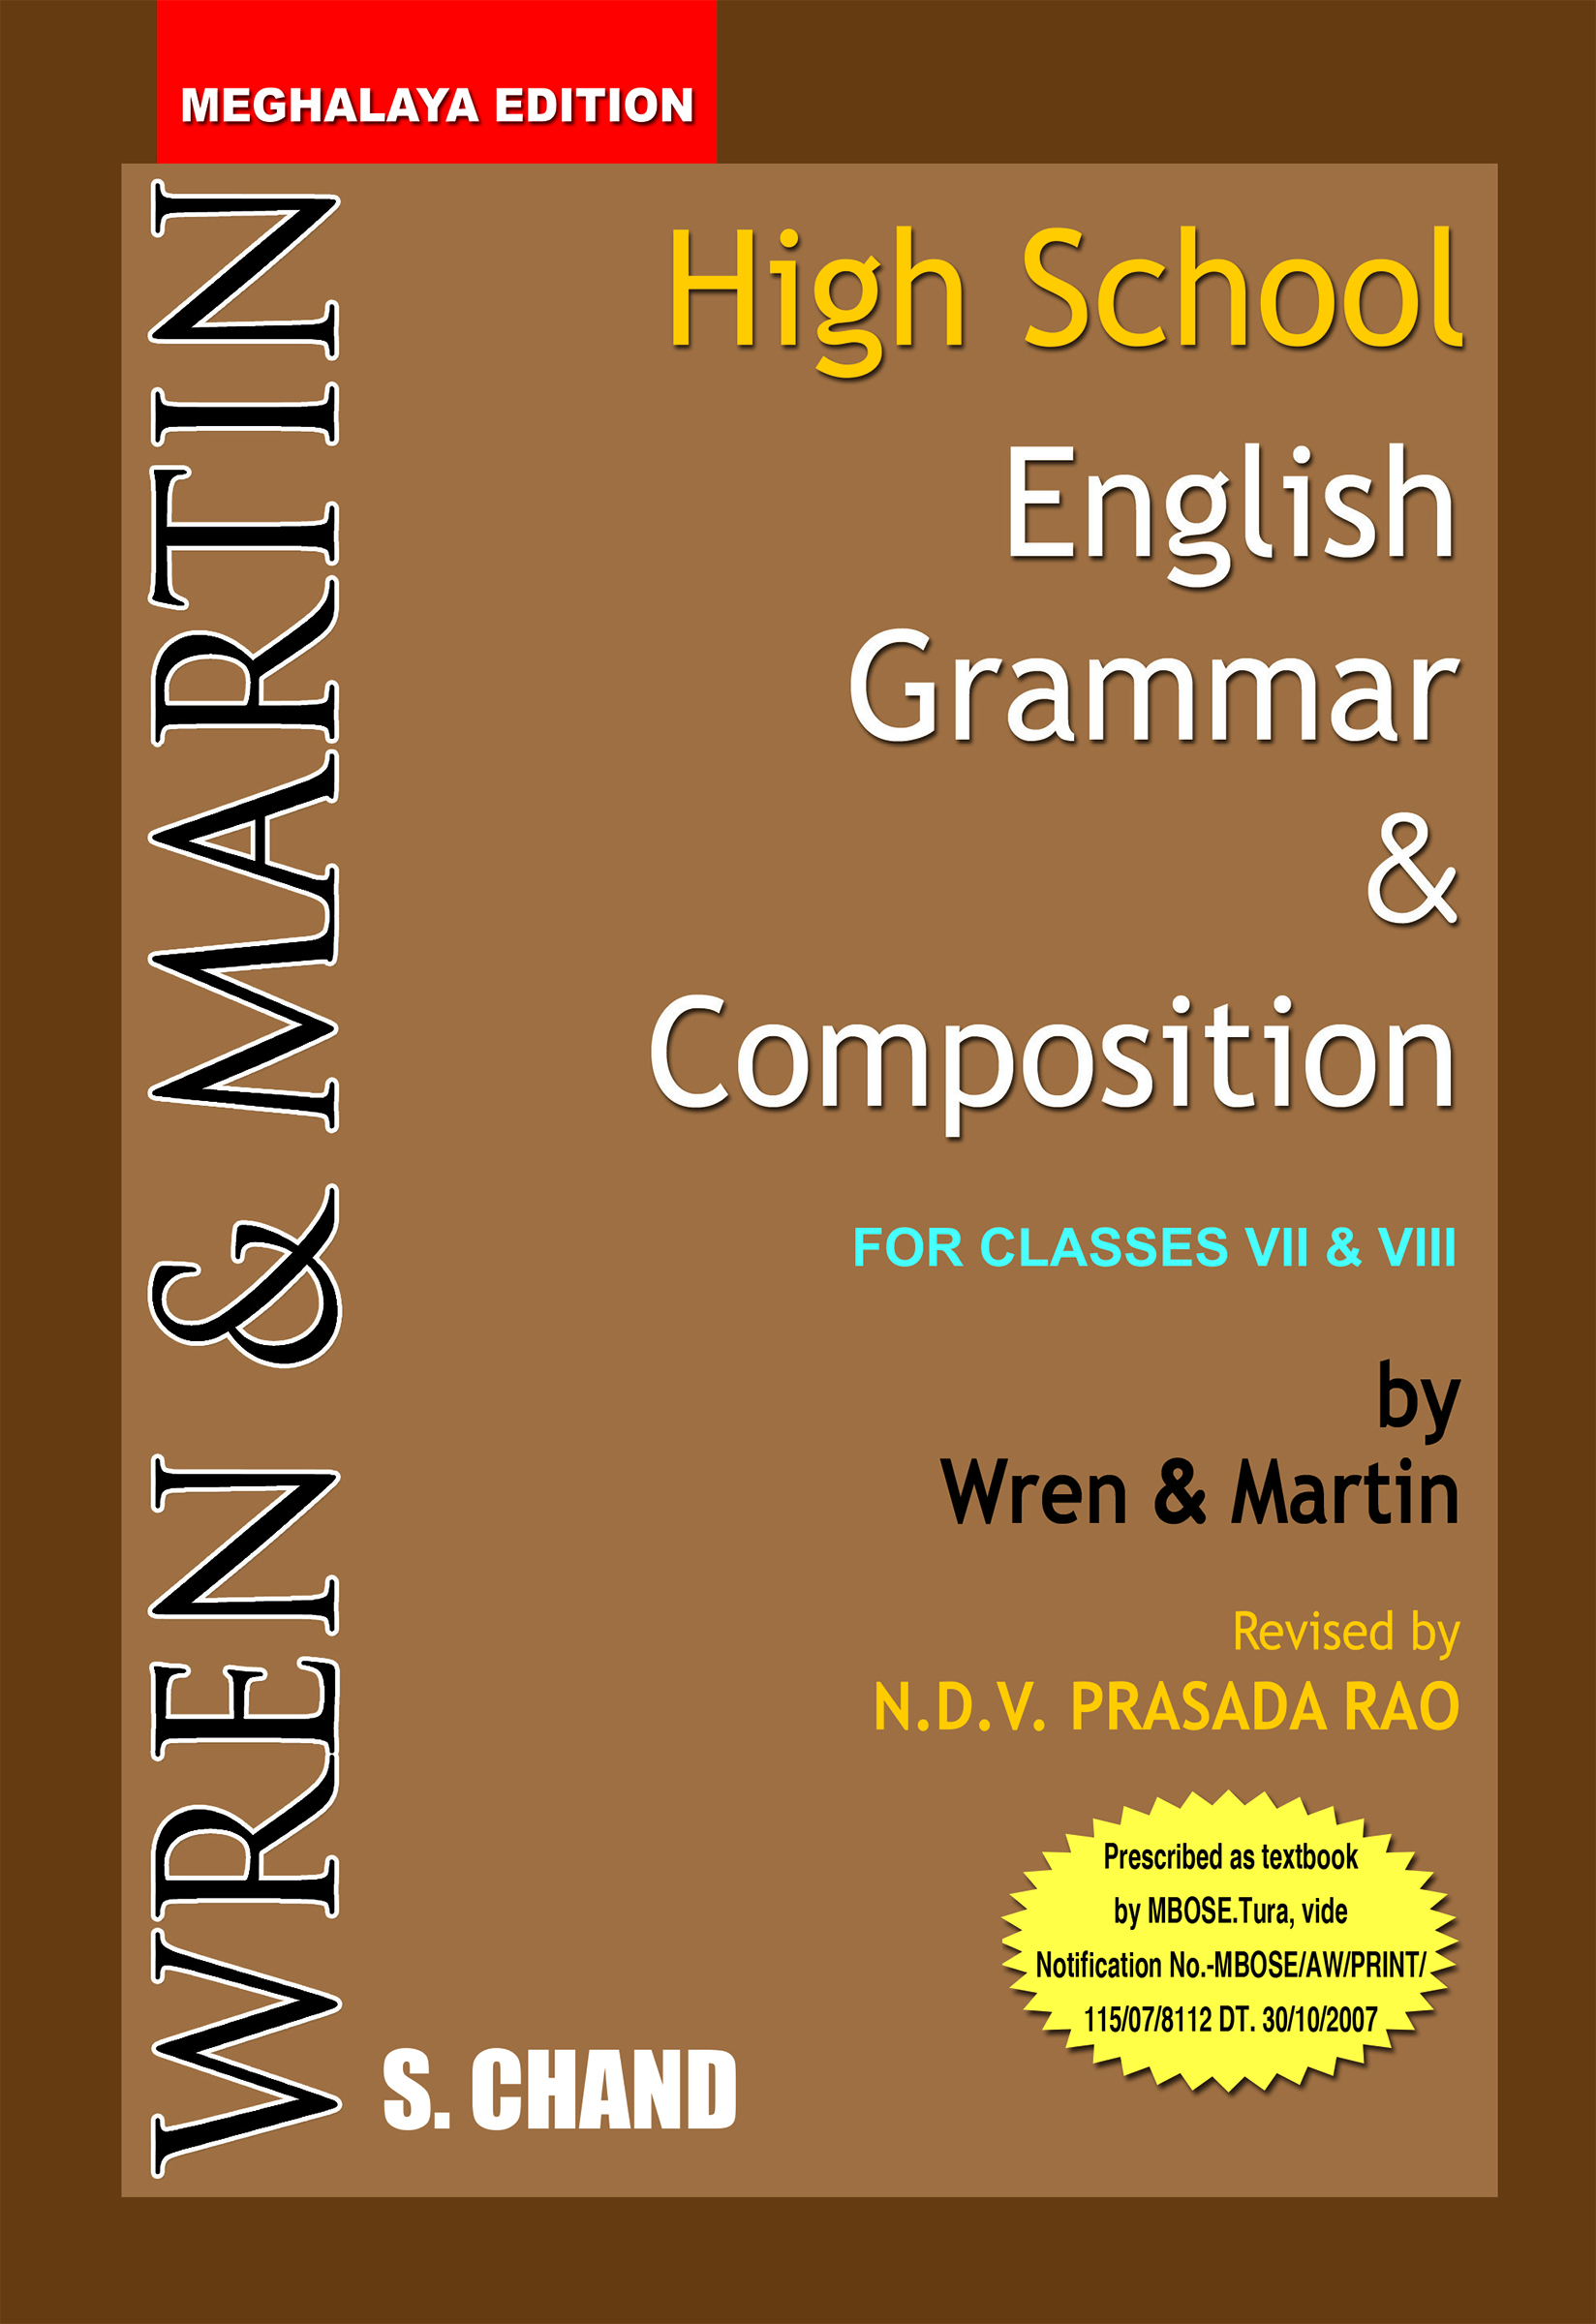 high-school-english-grammar-meghalaya-by-wren-martin